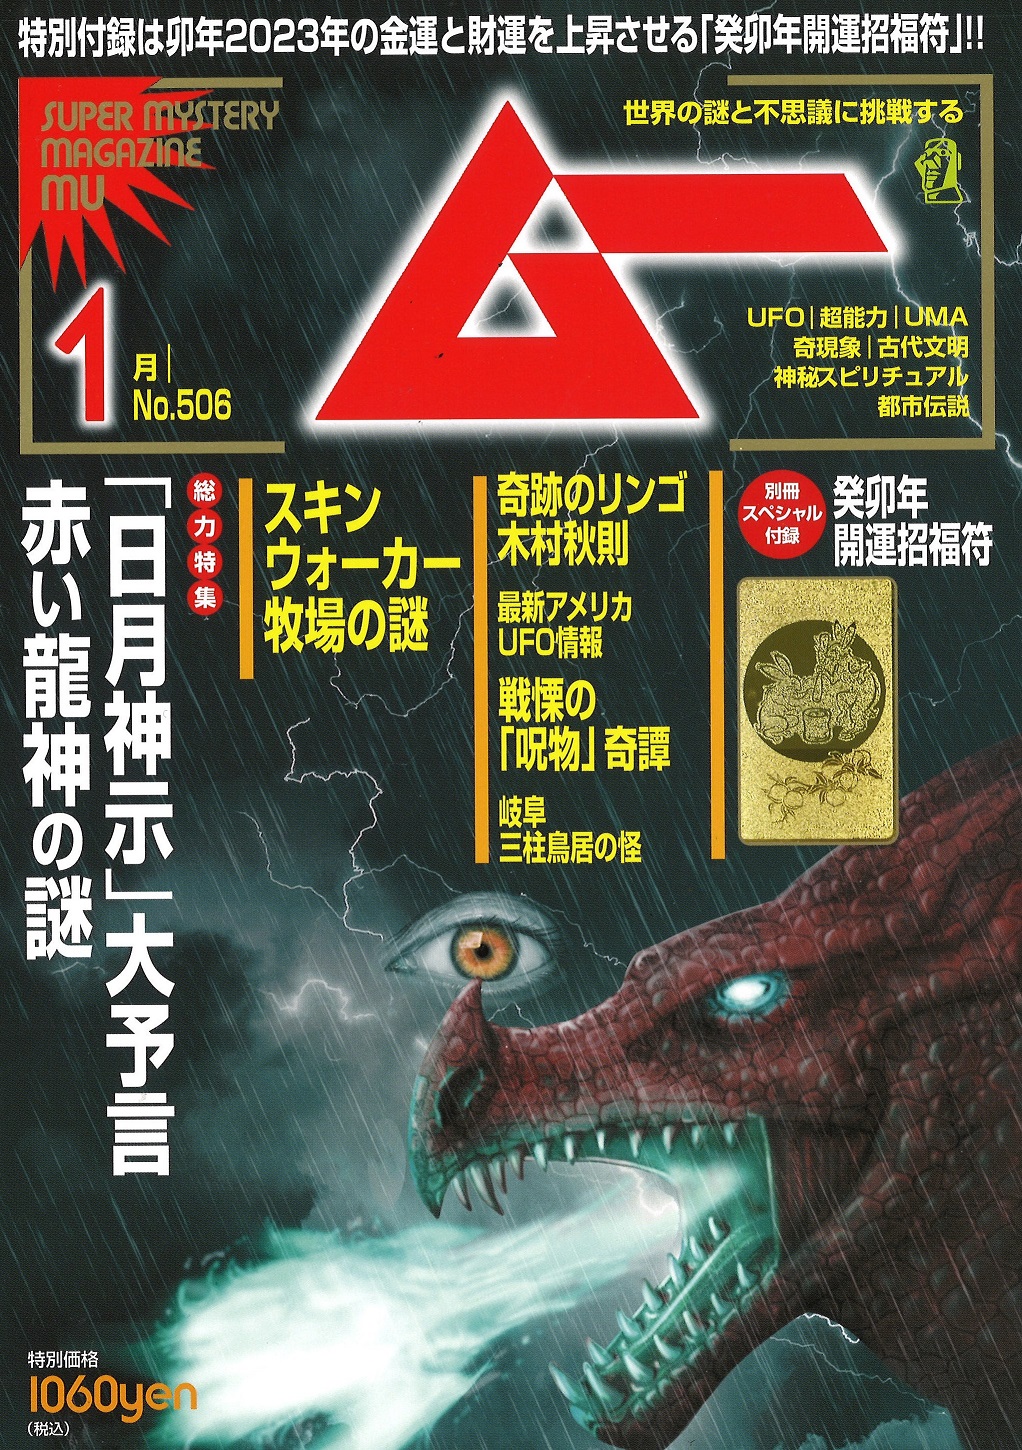 総力特集は、「日月神示」大予言 赤い龍神の謎 月刊「ムー」12月号発売